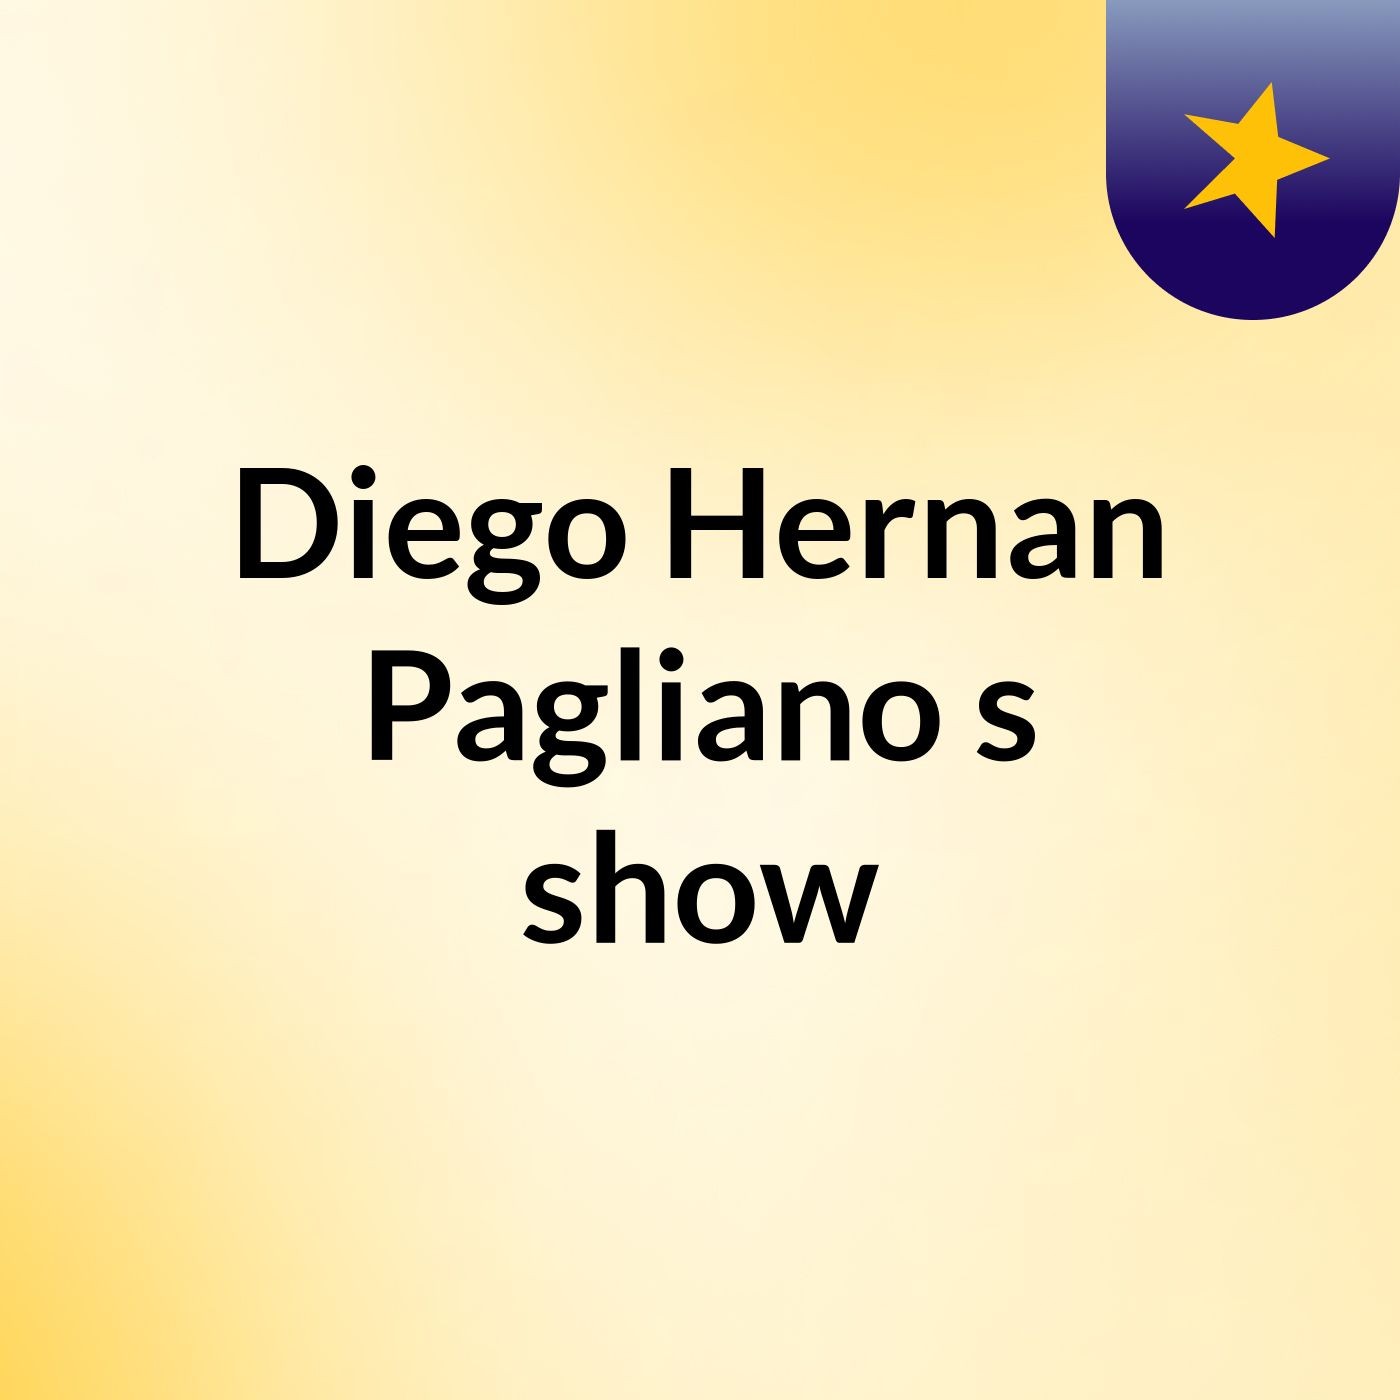 Diego Hernan Pagliano's show